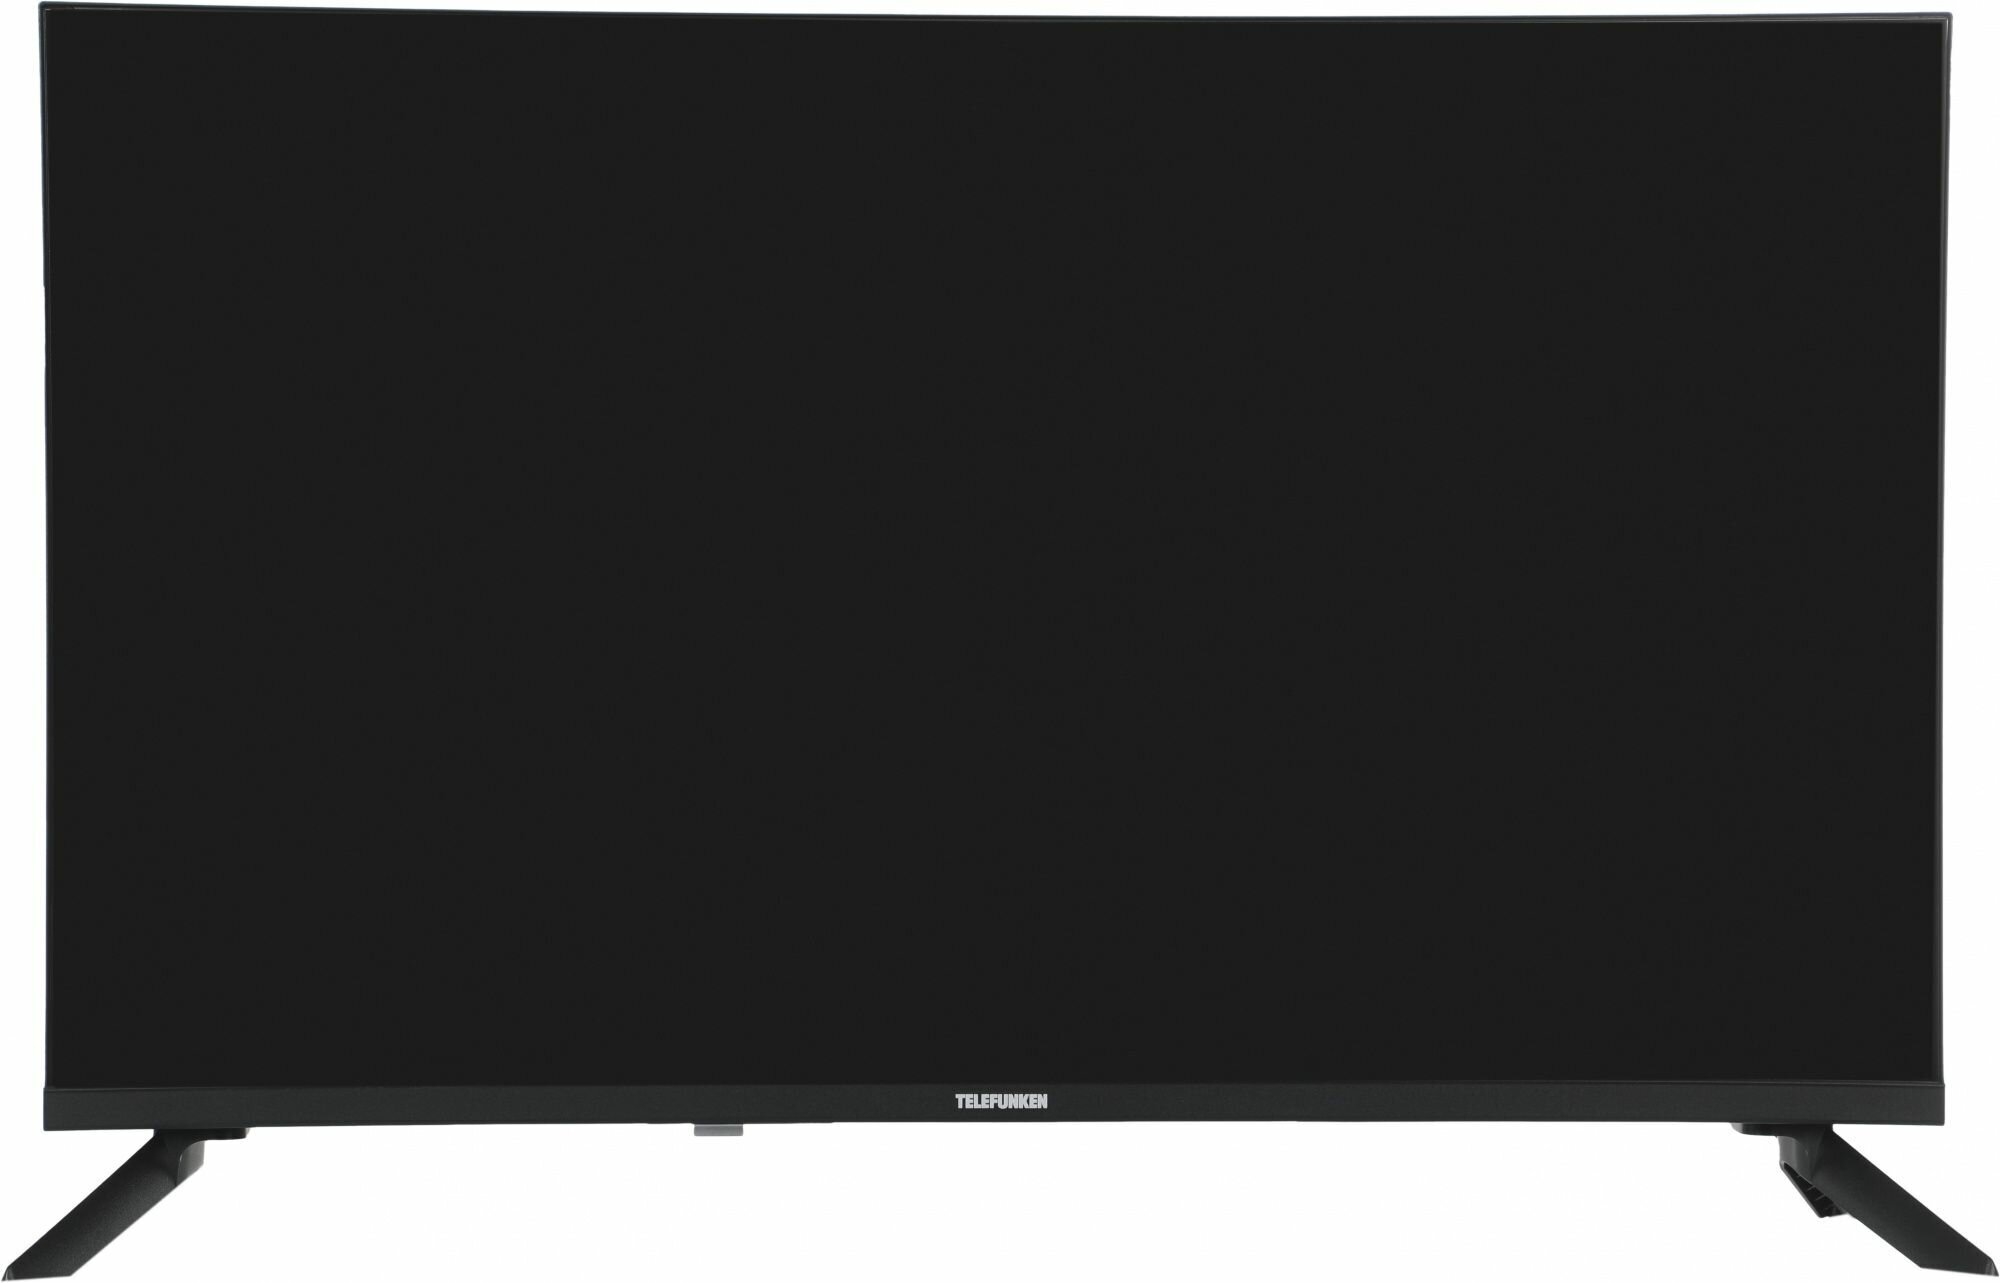 Телевизор Telefunken TF-LED 32 S39 T2 черный